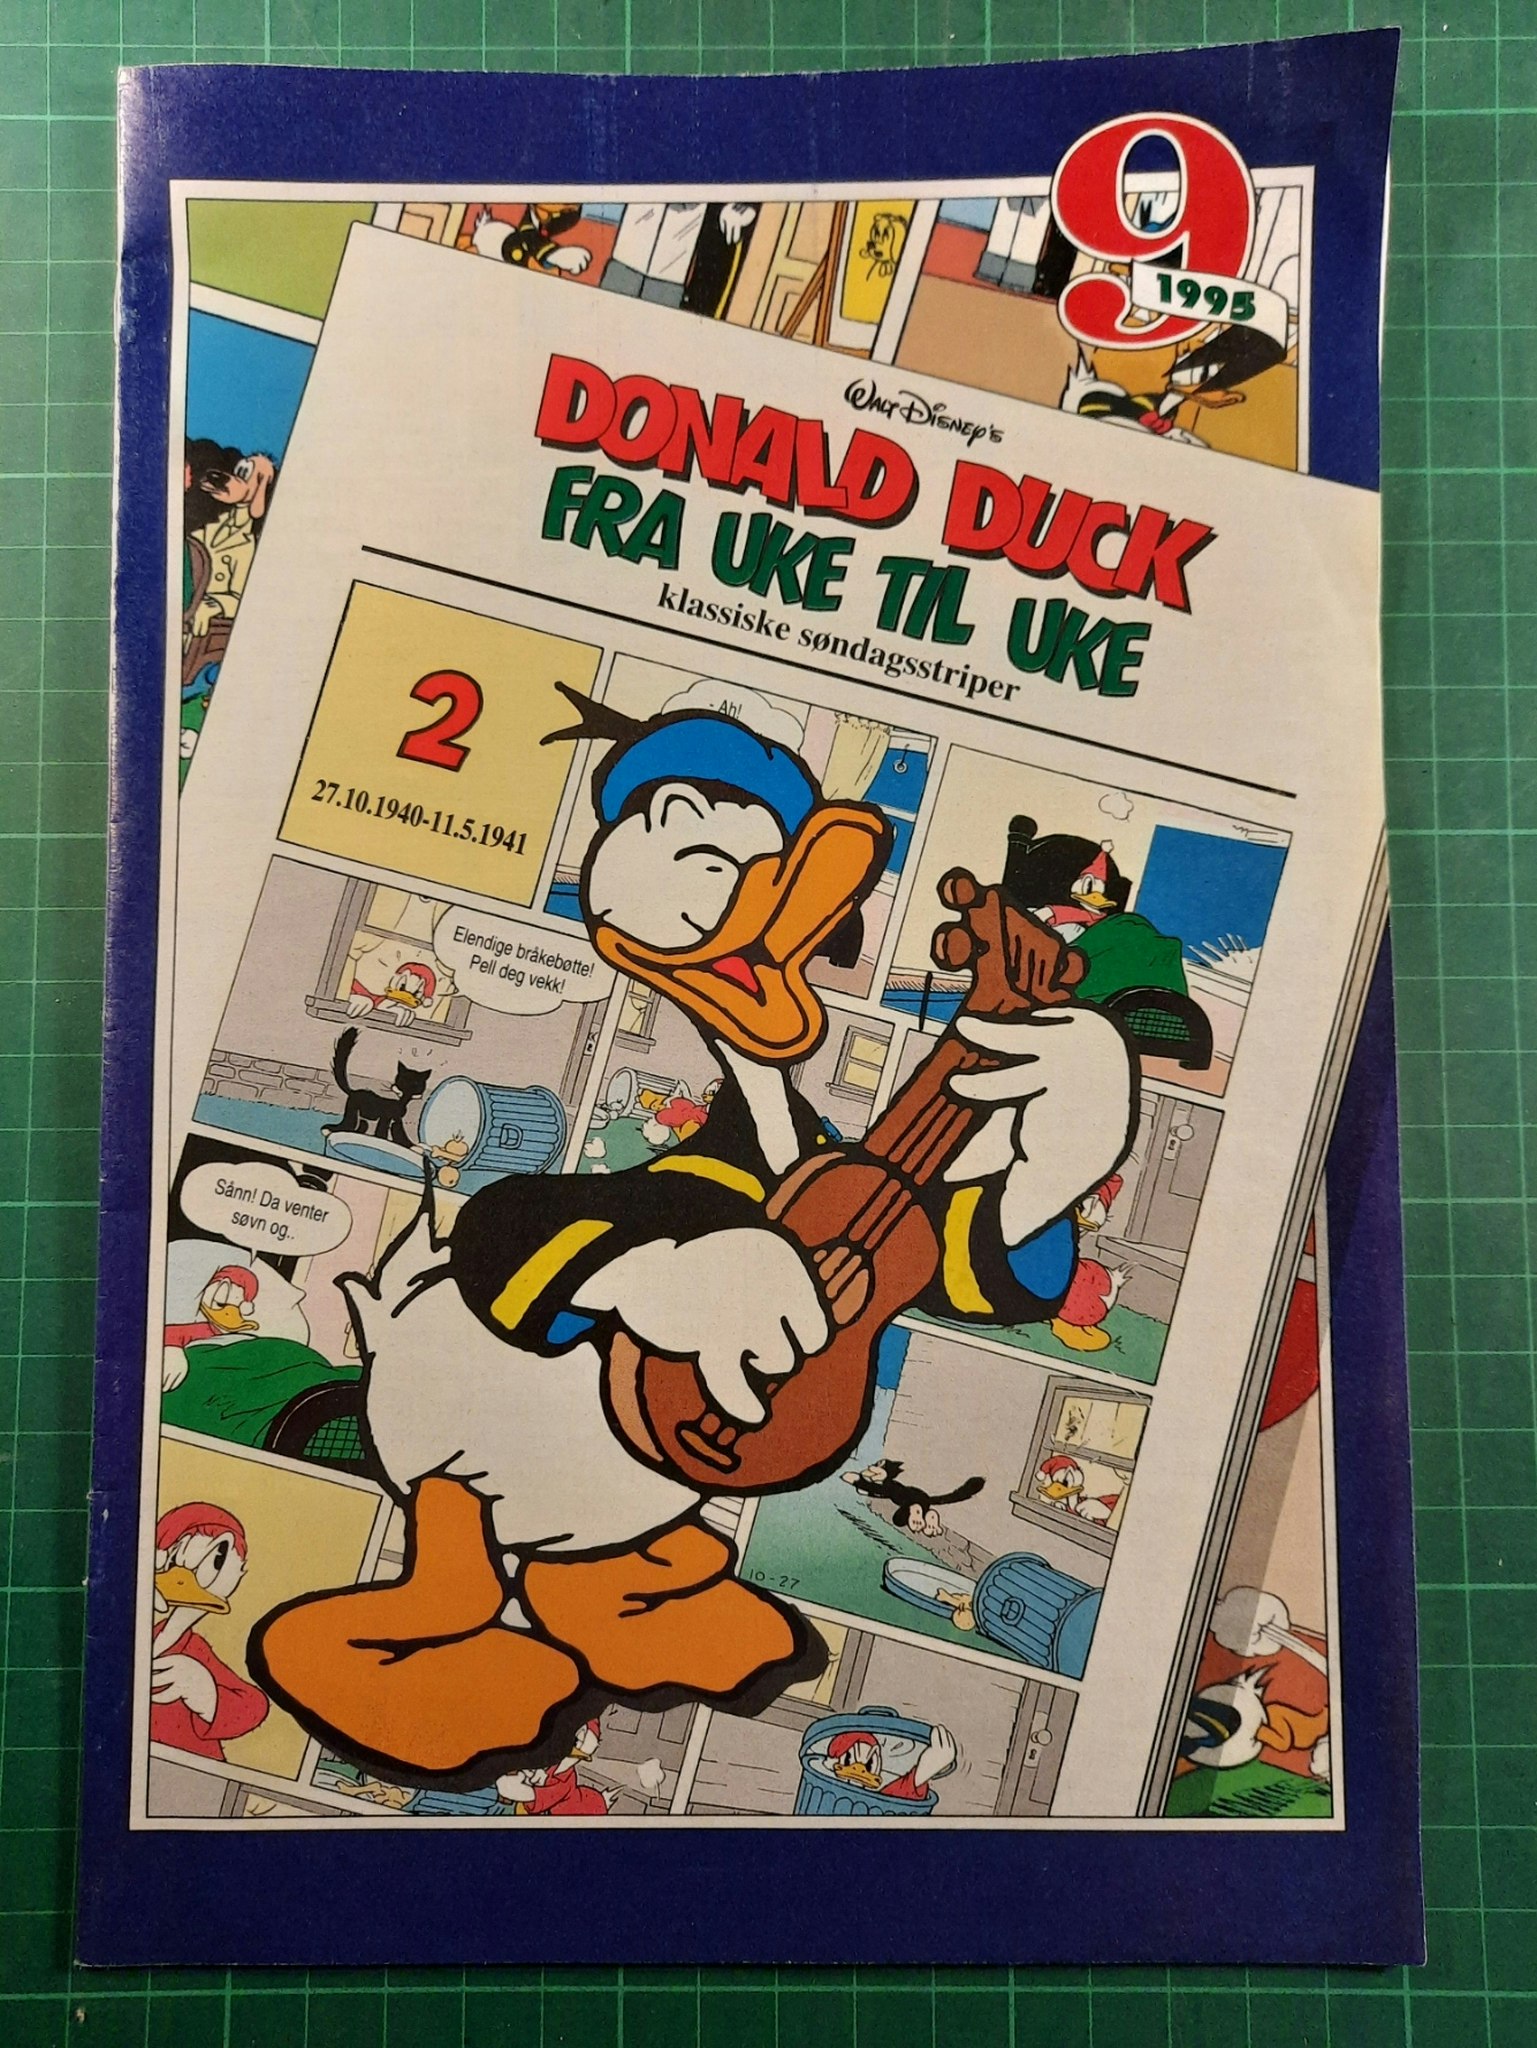 Donald Duck fra uke til uke 2